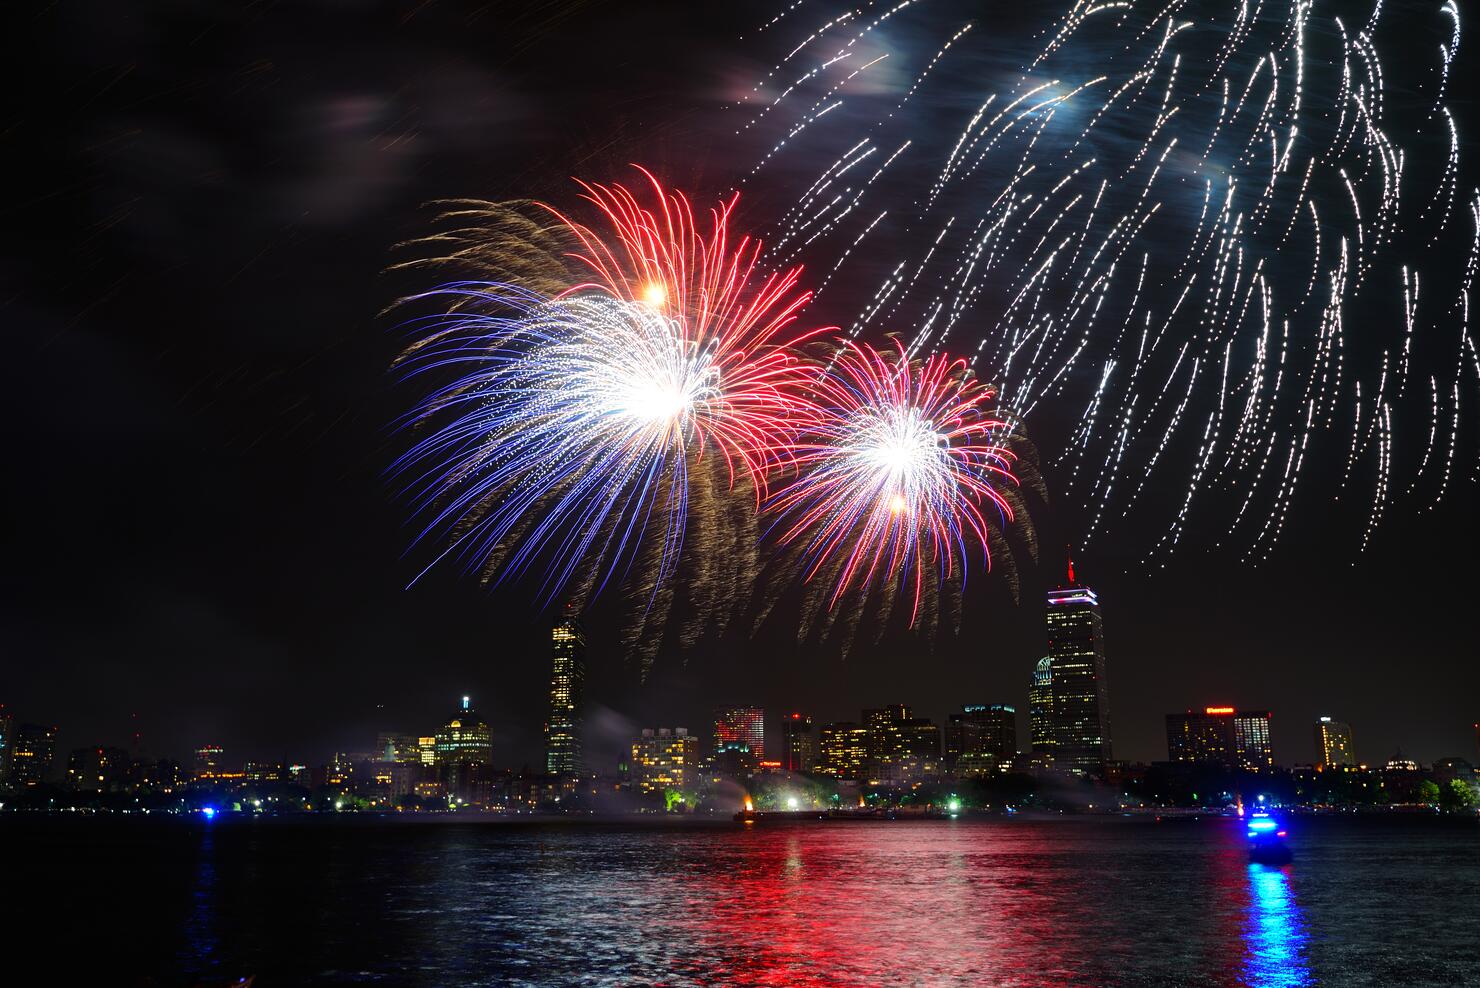 Boston Pops Fireworks Spectacular